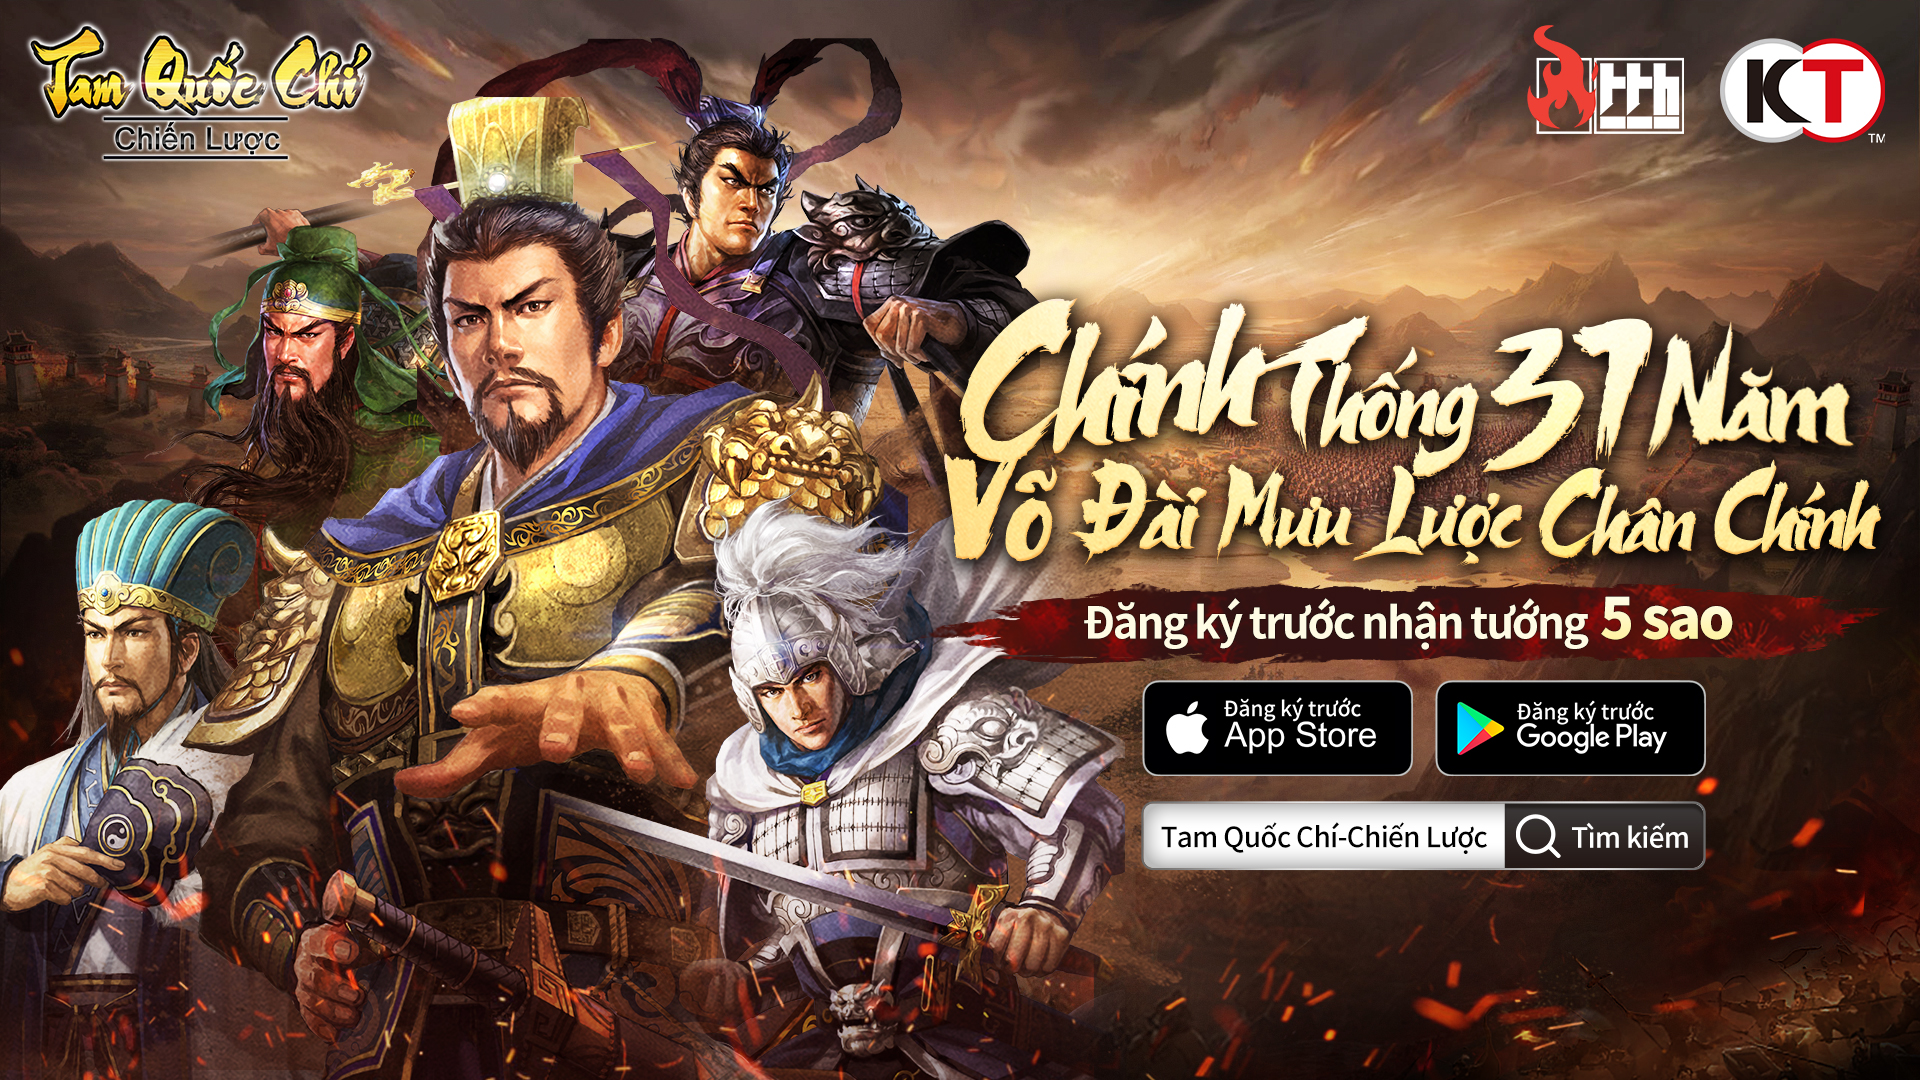 Tam Quốc Chí – Chiến Lược tổ chức họp báo online, mời game thủ trải nghiệm lối chơi chiến thuật đỉnh cao 4